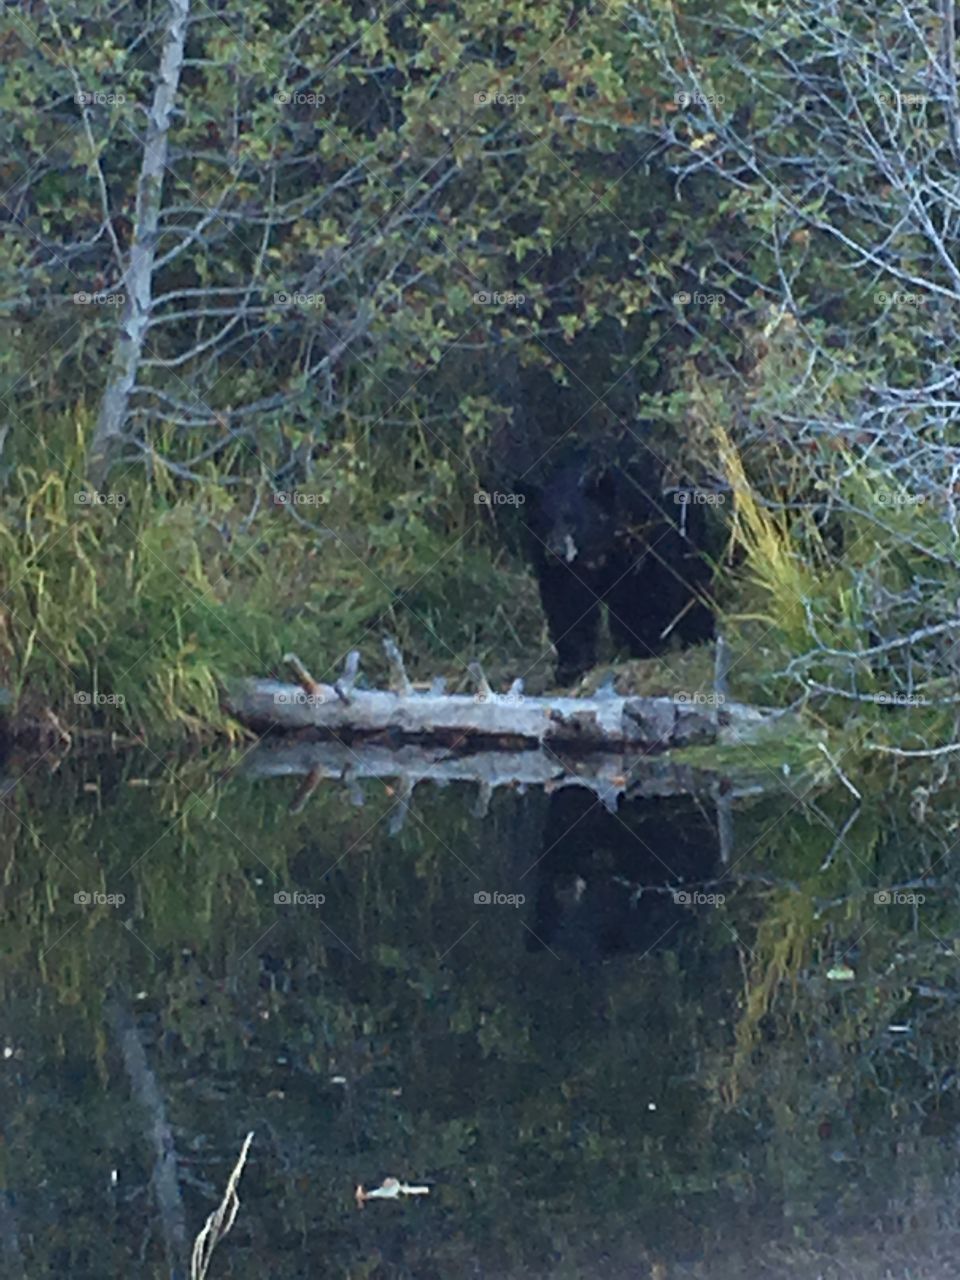 Big beautiful black bear at Taylor Creek in Lake Tahoe